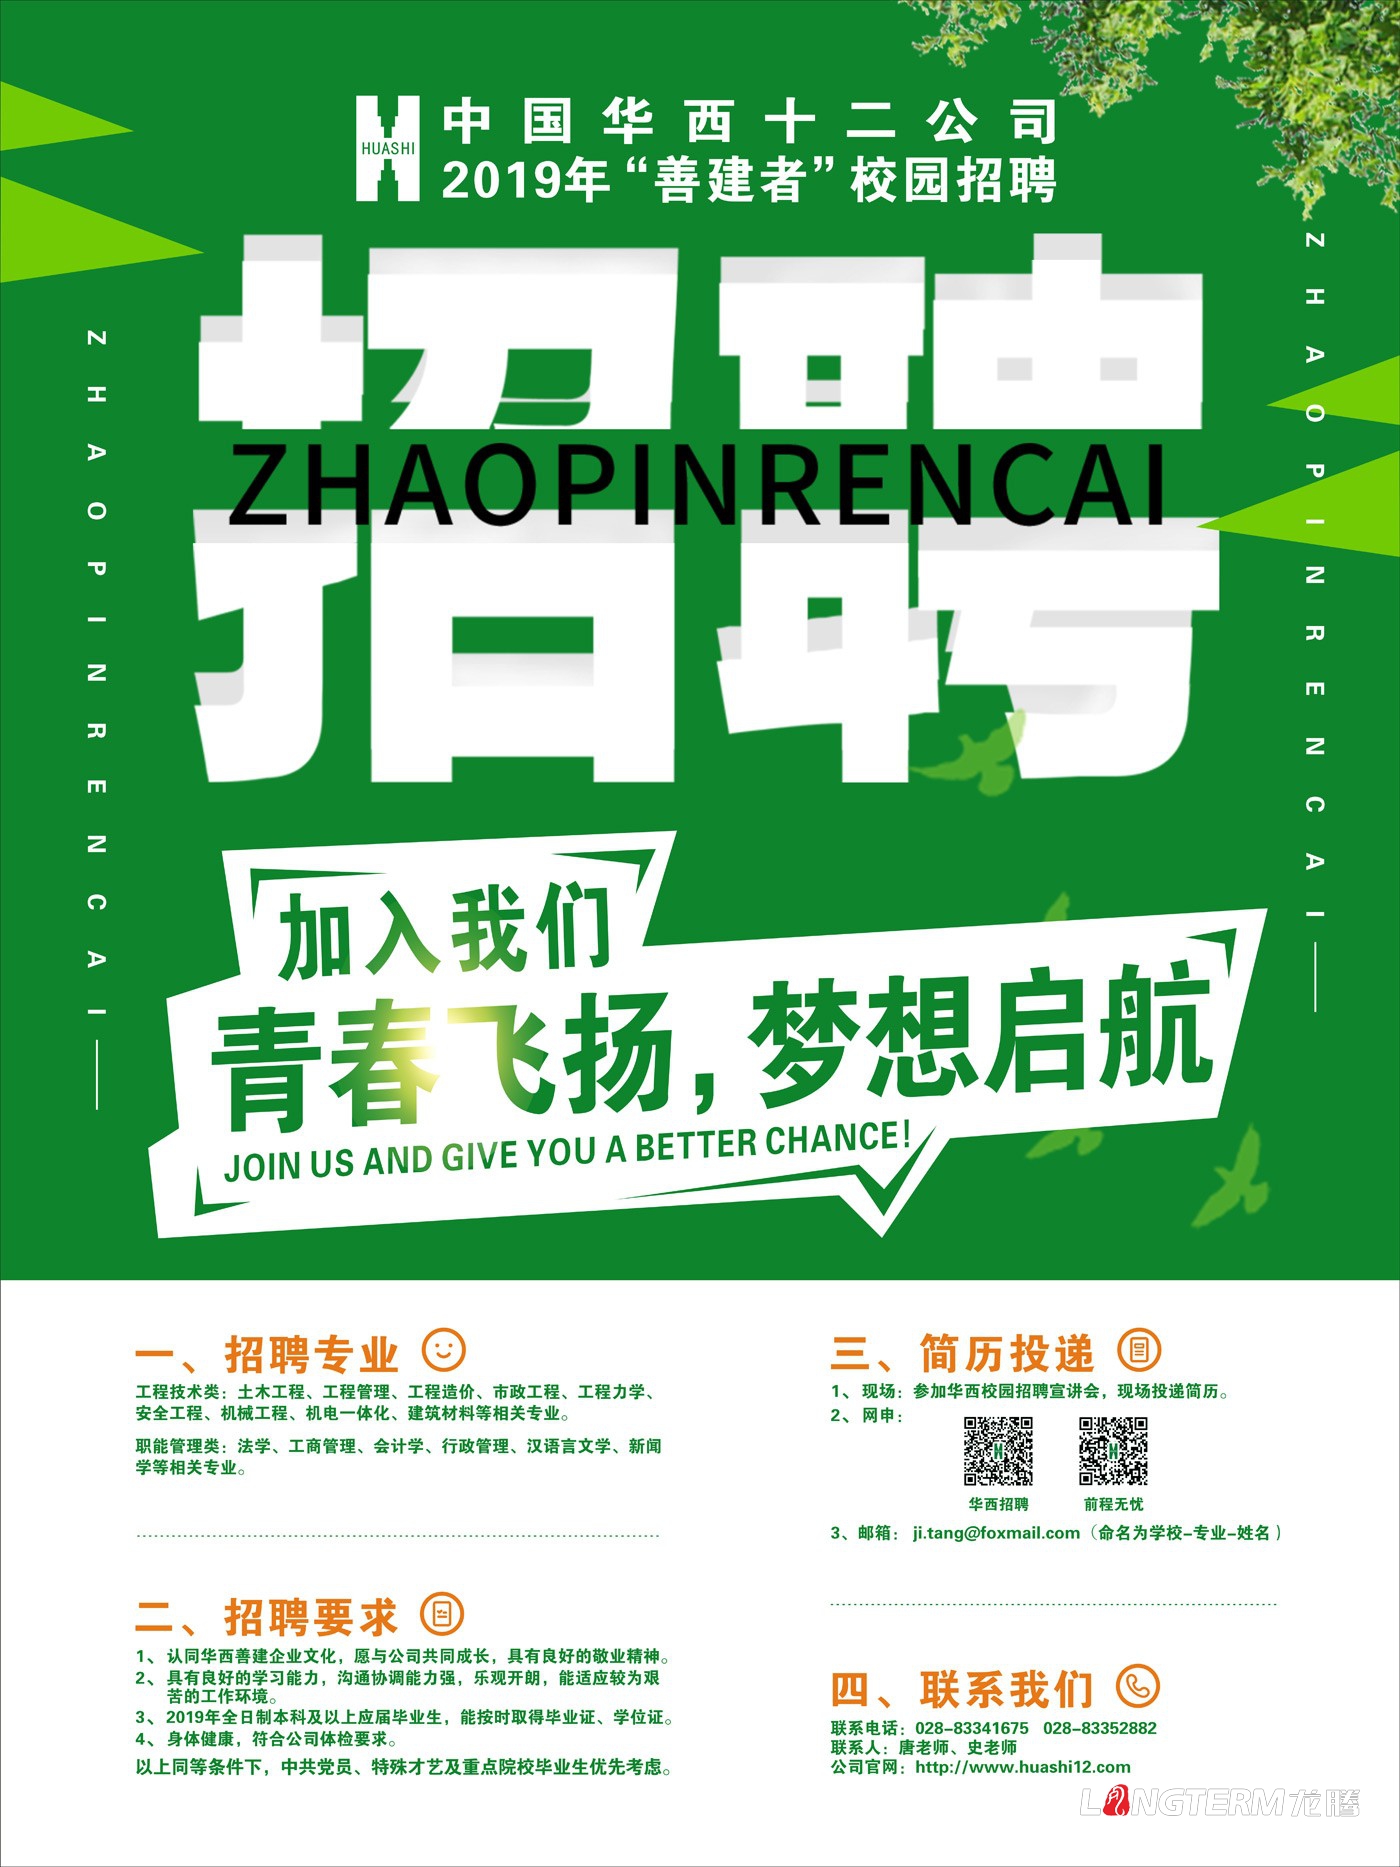 中国华西十二公司校园招聘海报设计